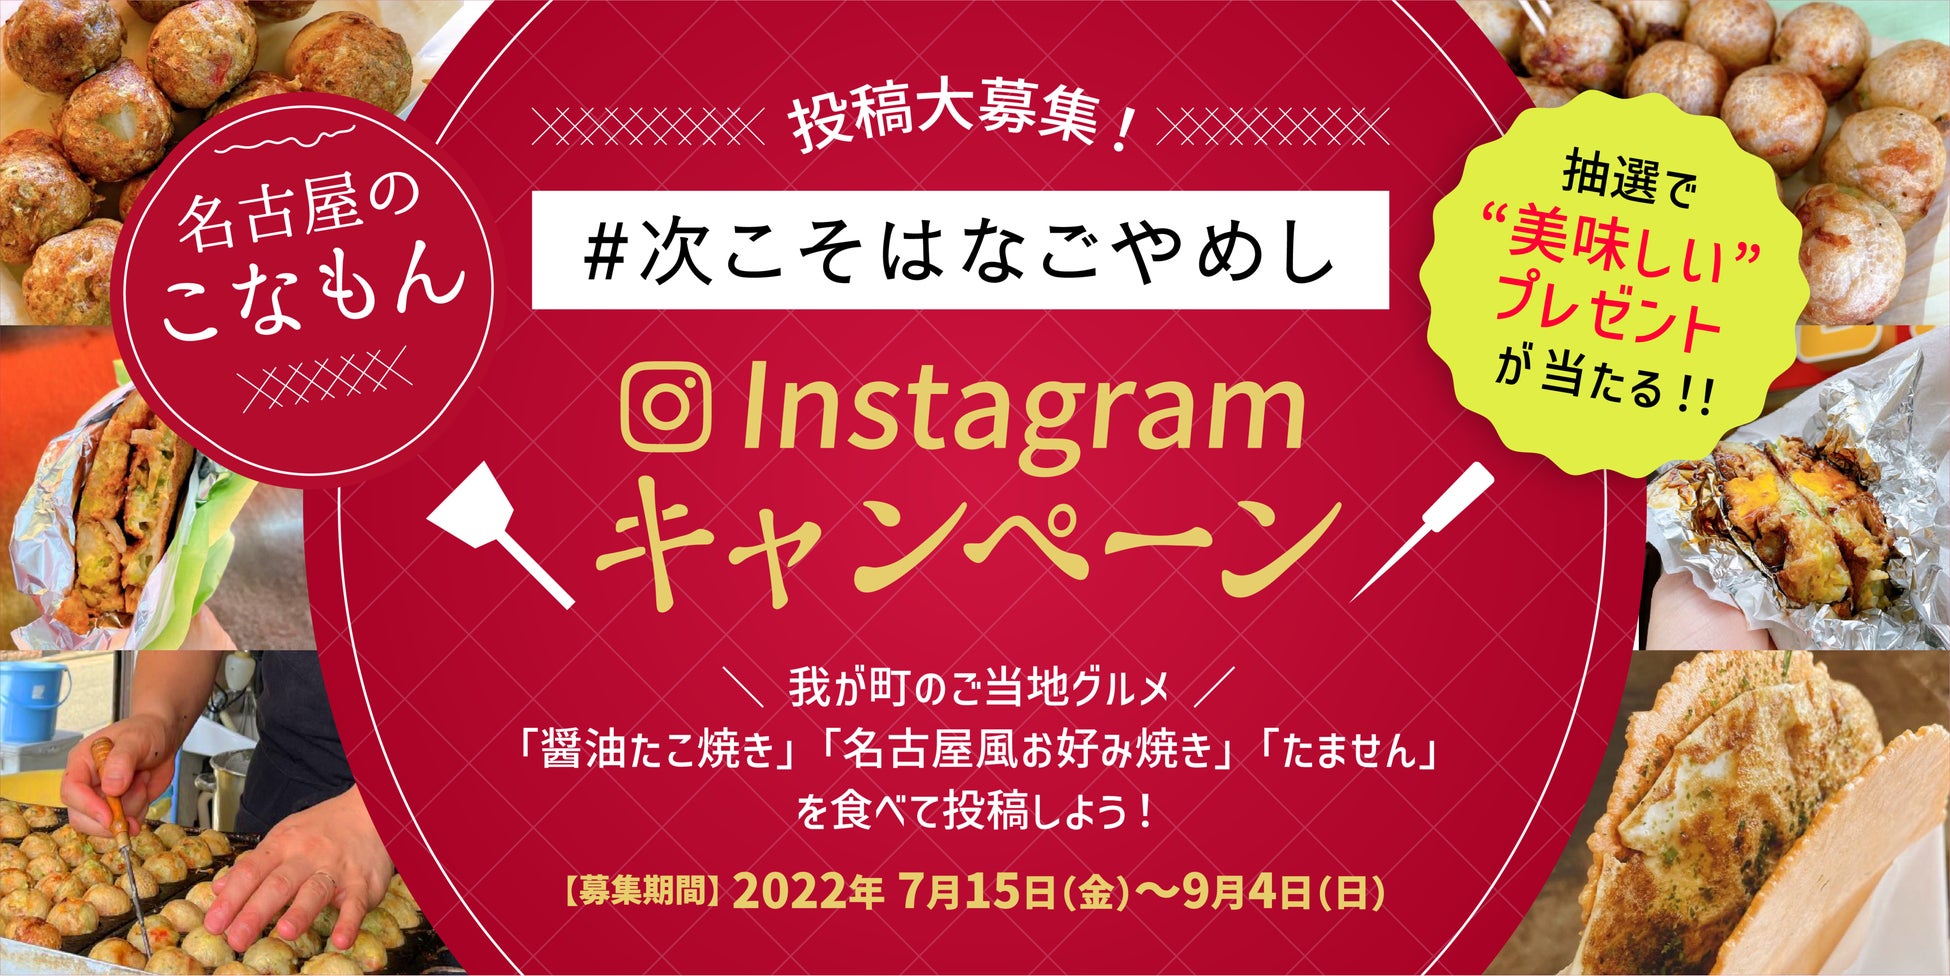 「＃次こそはなごやめし（醤油たこ焼き、名古屋風お好み焼き、たません）」コラム記事発信・Instagramキャンペーンを開催します